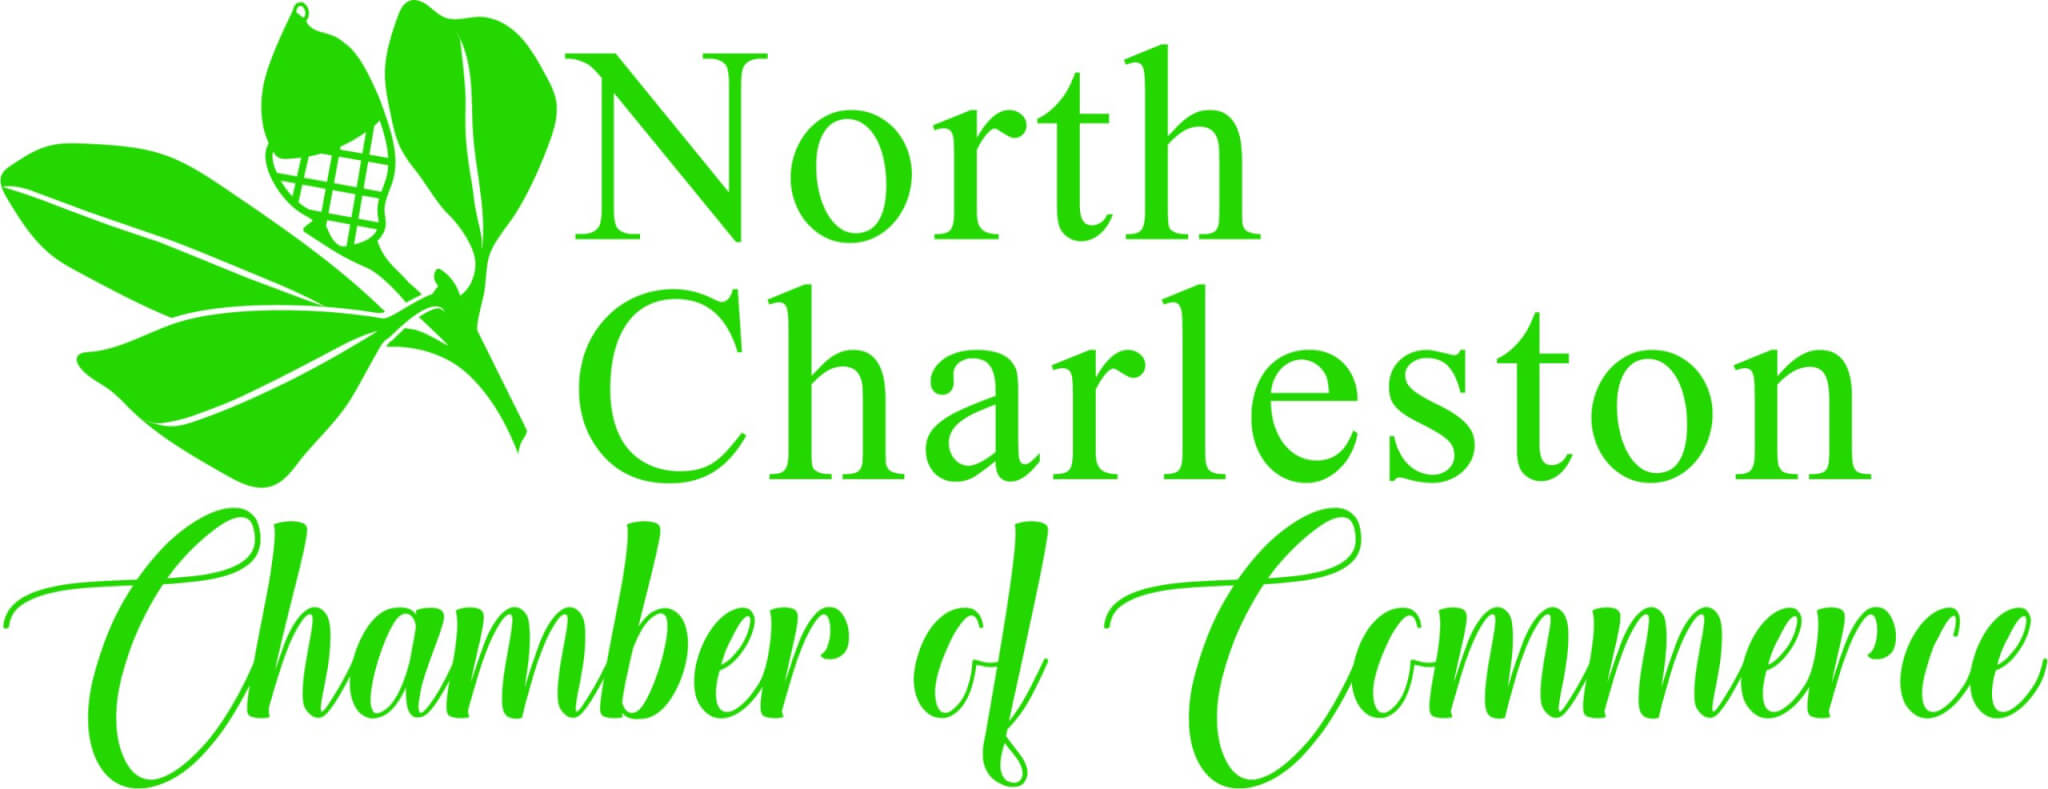 north charleston chamber